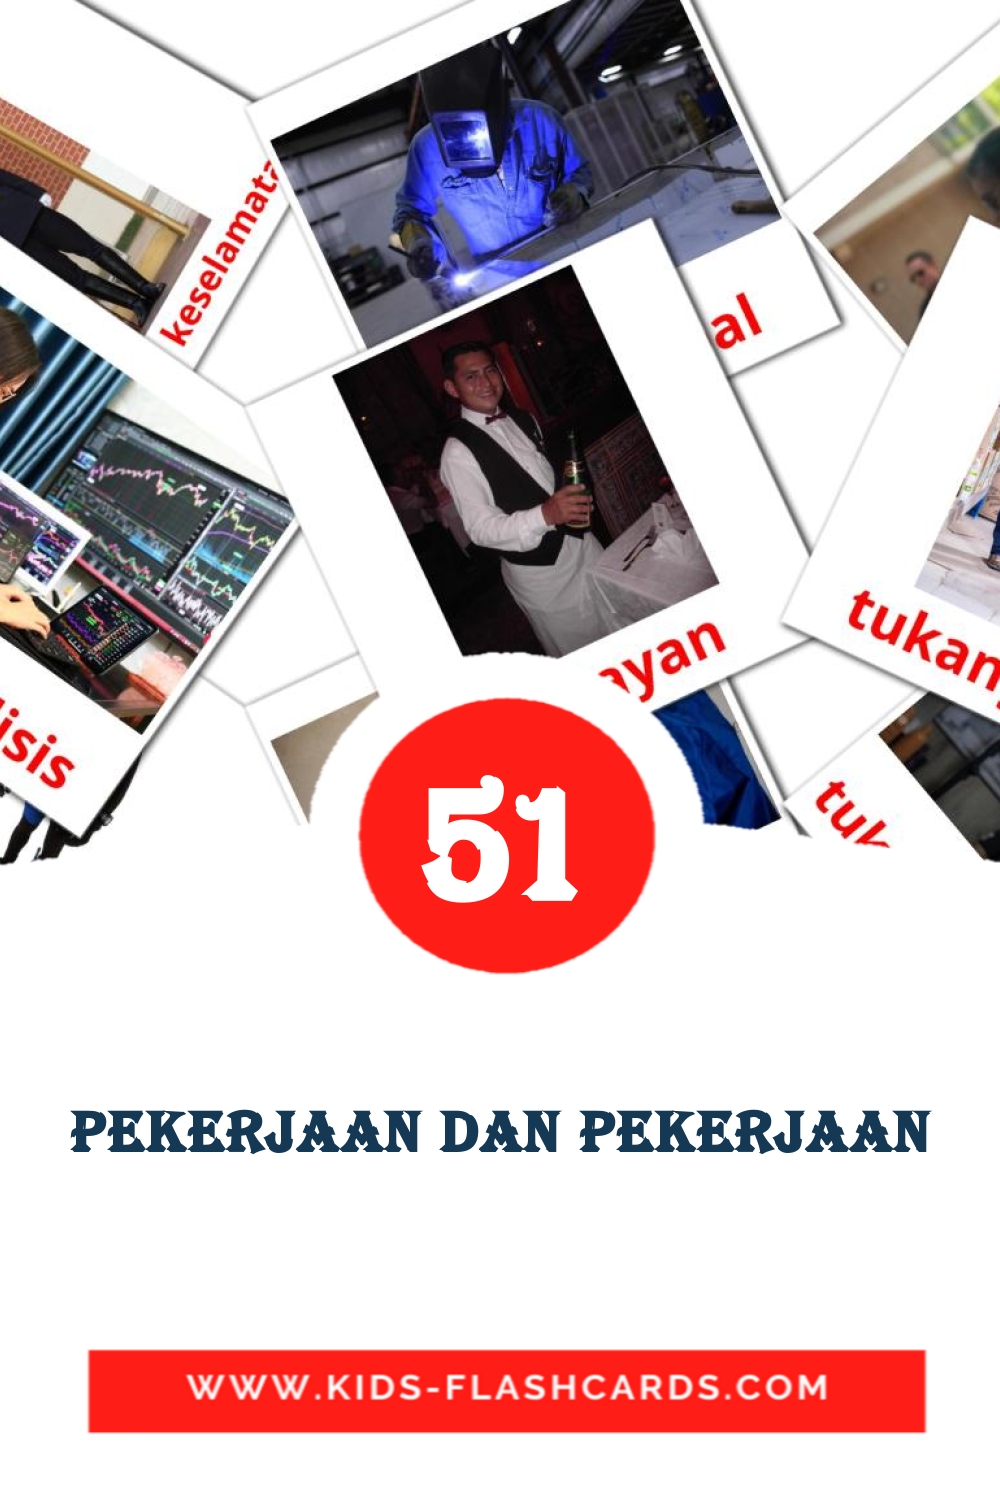 51 Pekerjaan dan Pekerjaan Picture Cards for Kindergarden in malay